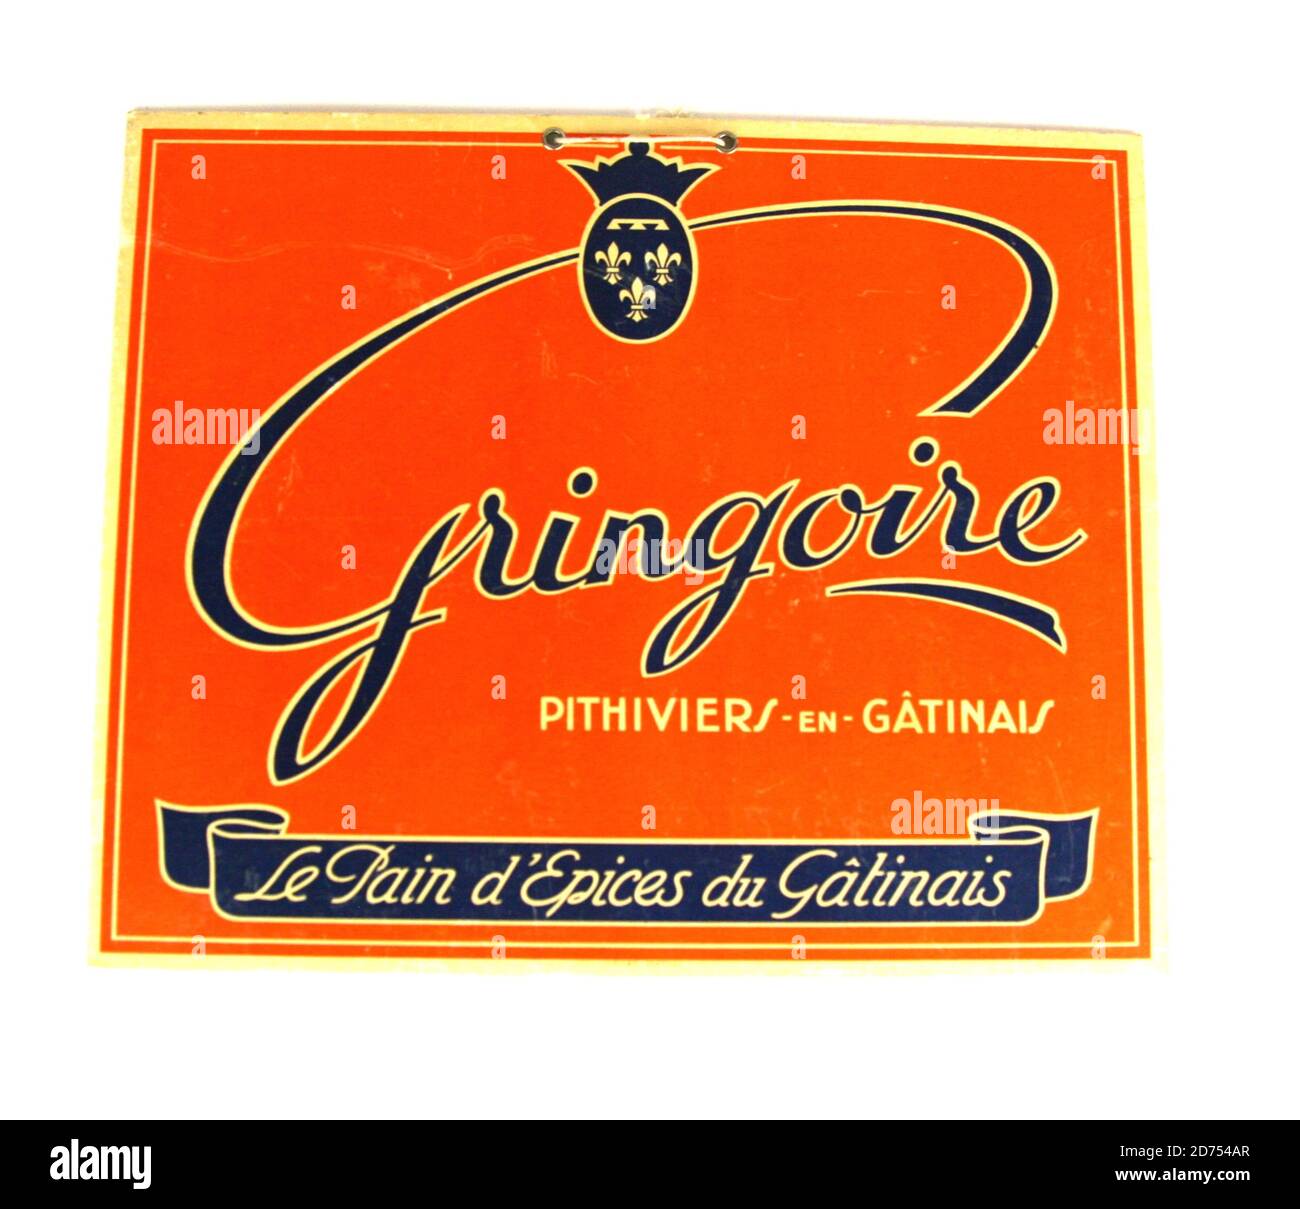 Carton publicitaire pain d epices Gringoire vers 1955 Stock Photo